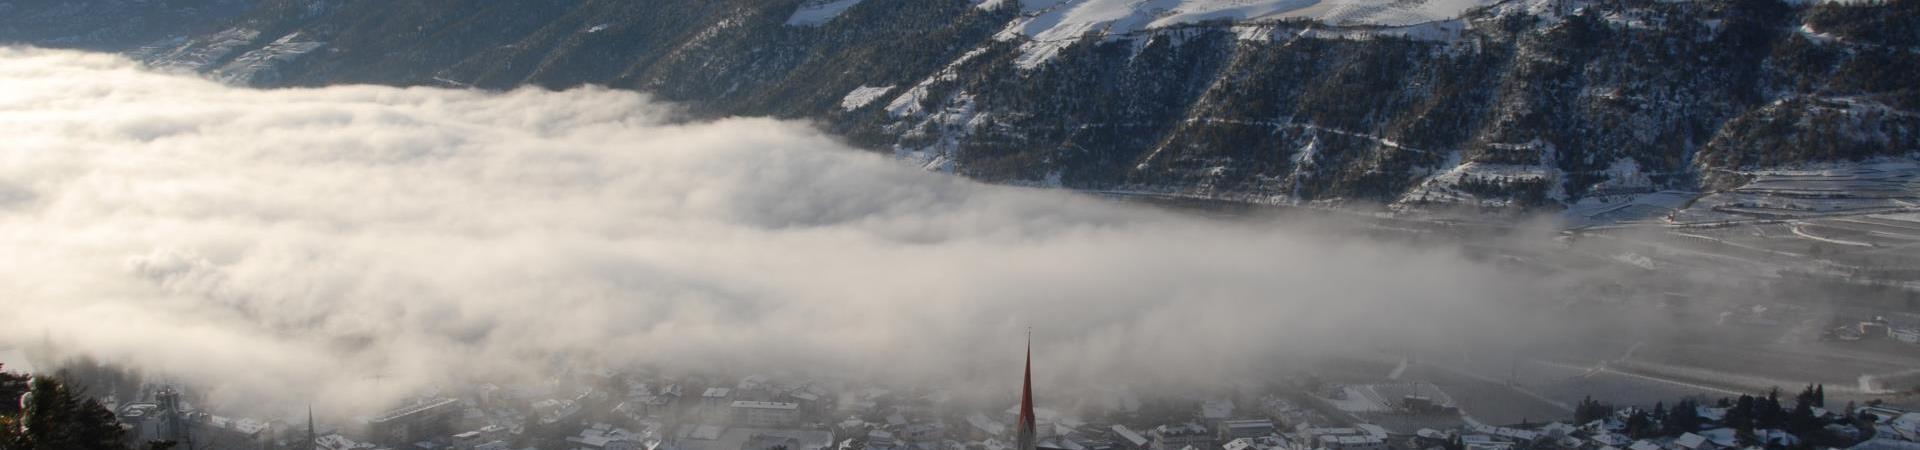 winterwandern-panoramablick-schlanders-laas-gb